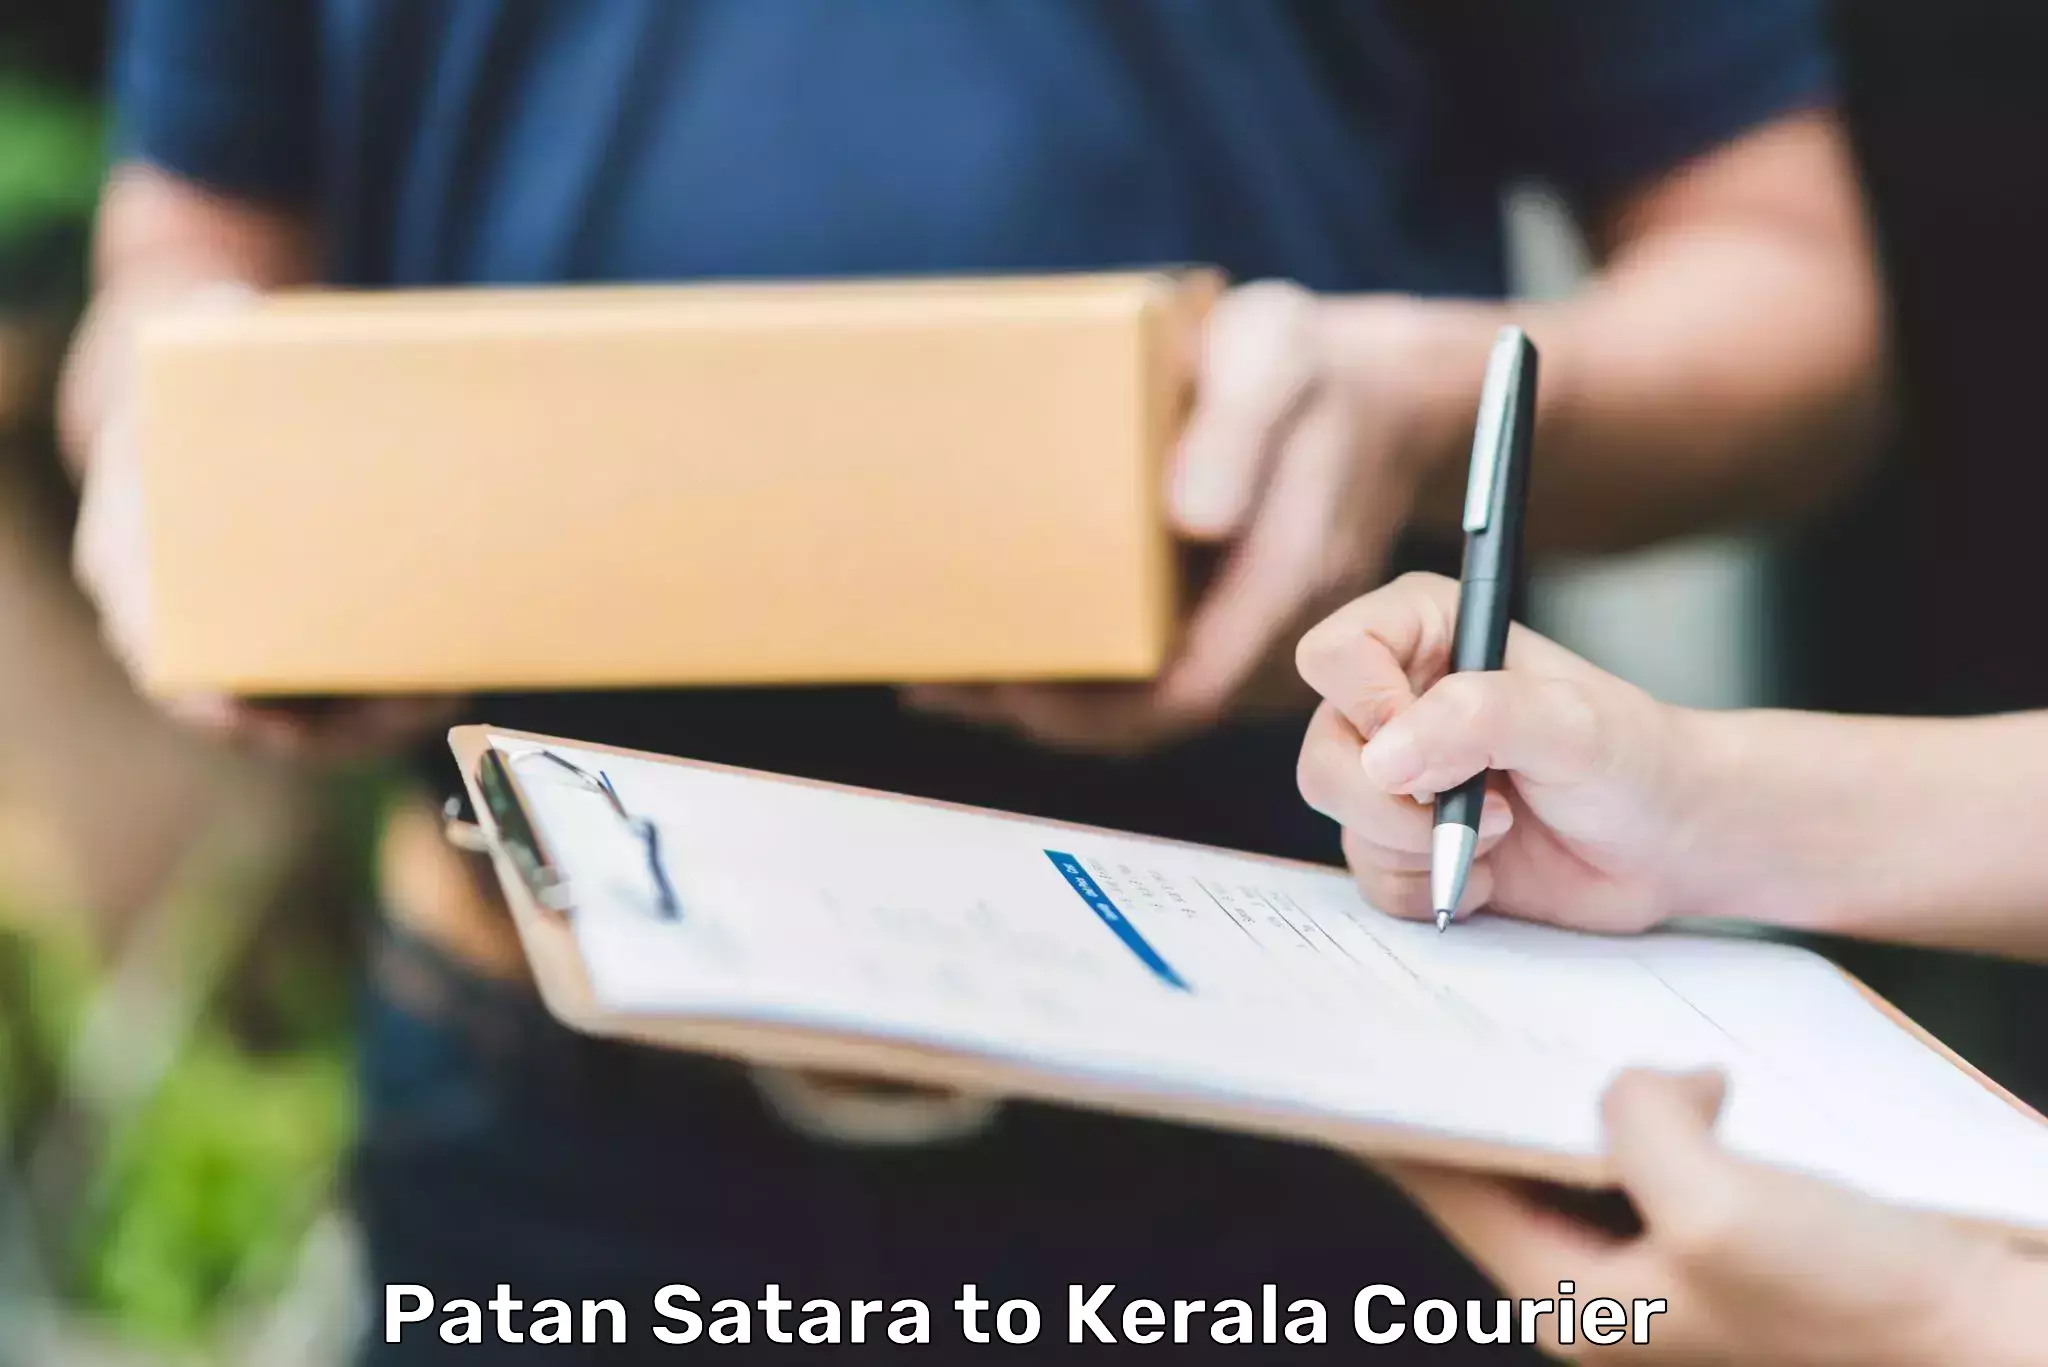 Express courier capabilities Patan Satara to Kadanad